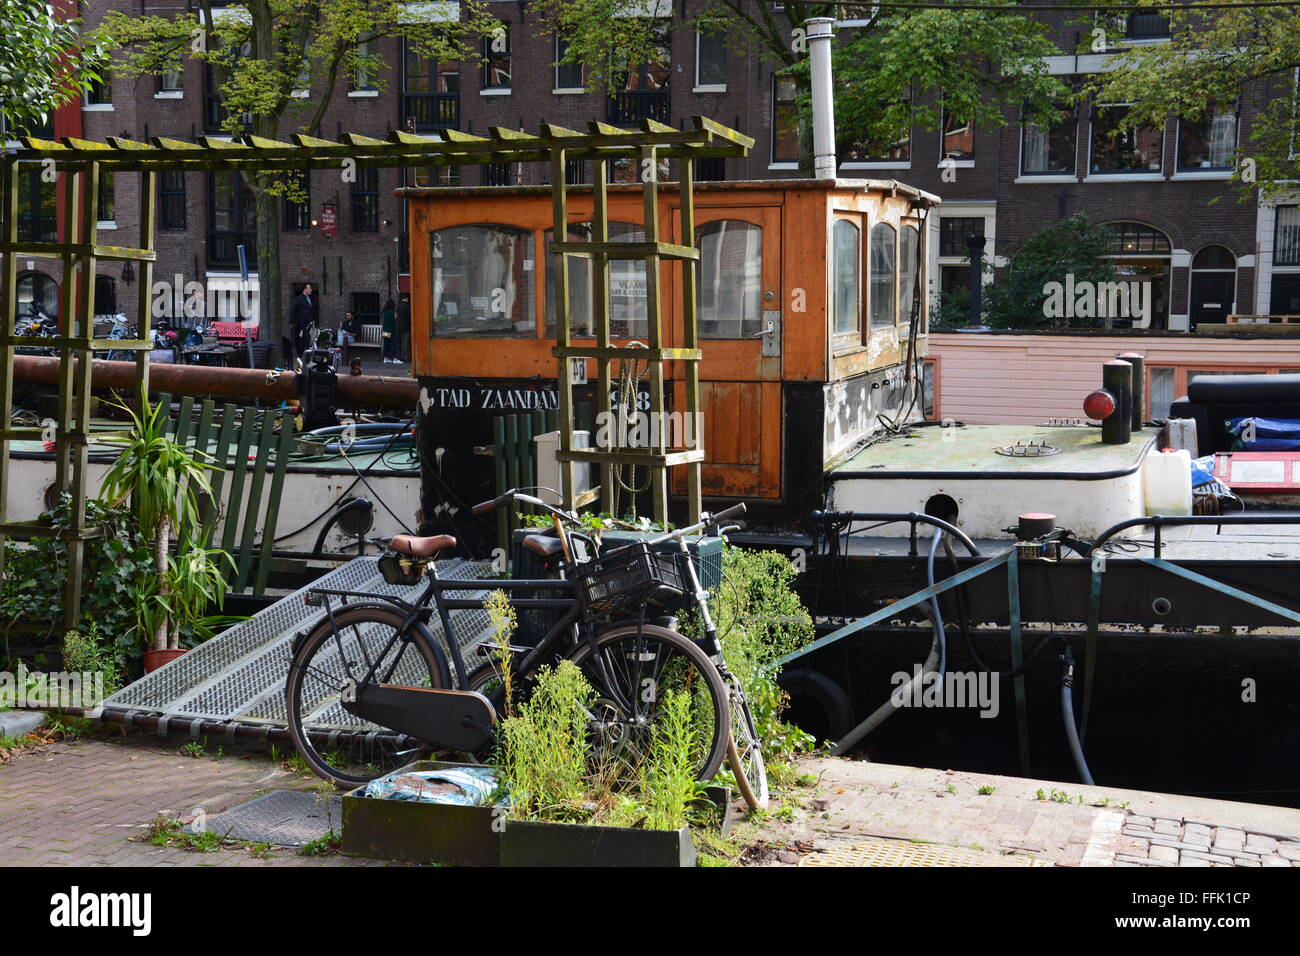 Nahaufnahme von Kanal Boot Haus mit Fahrrädern vor der Tür. Kanalboote können sehr aufwendigen und sind ein Weg des Lebens in Amsterdam. Stockfoto